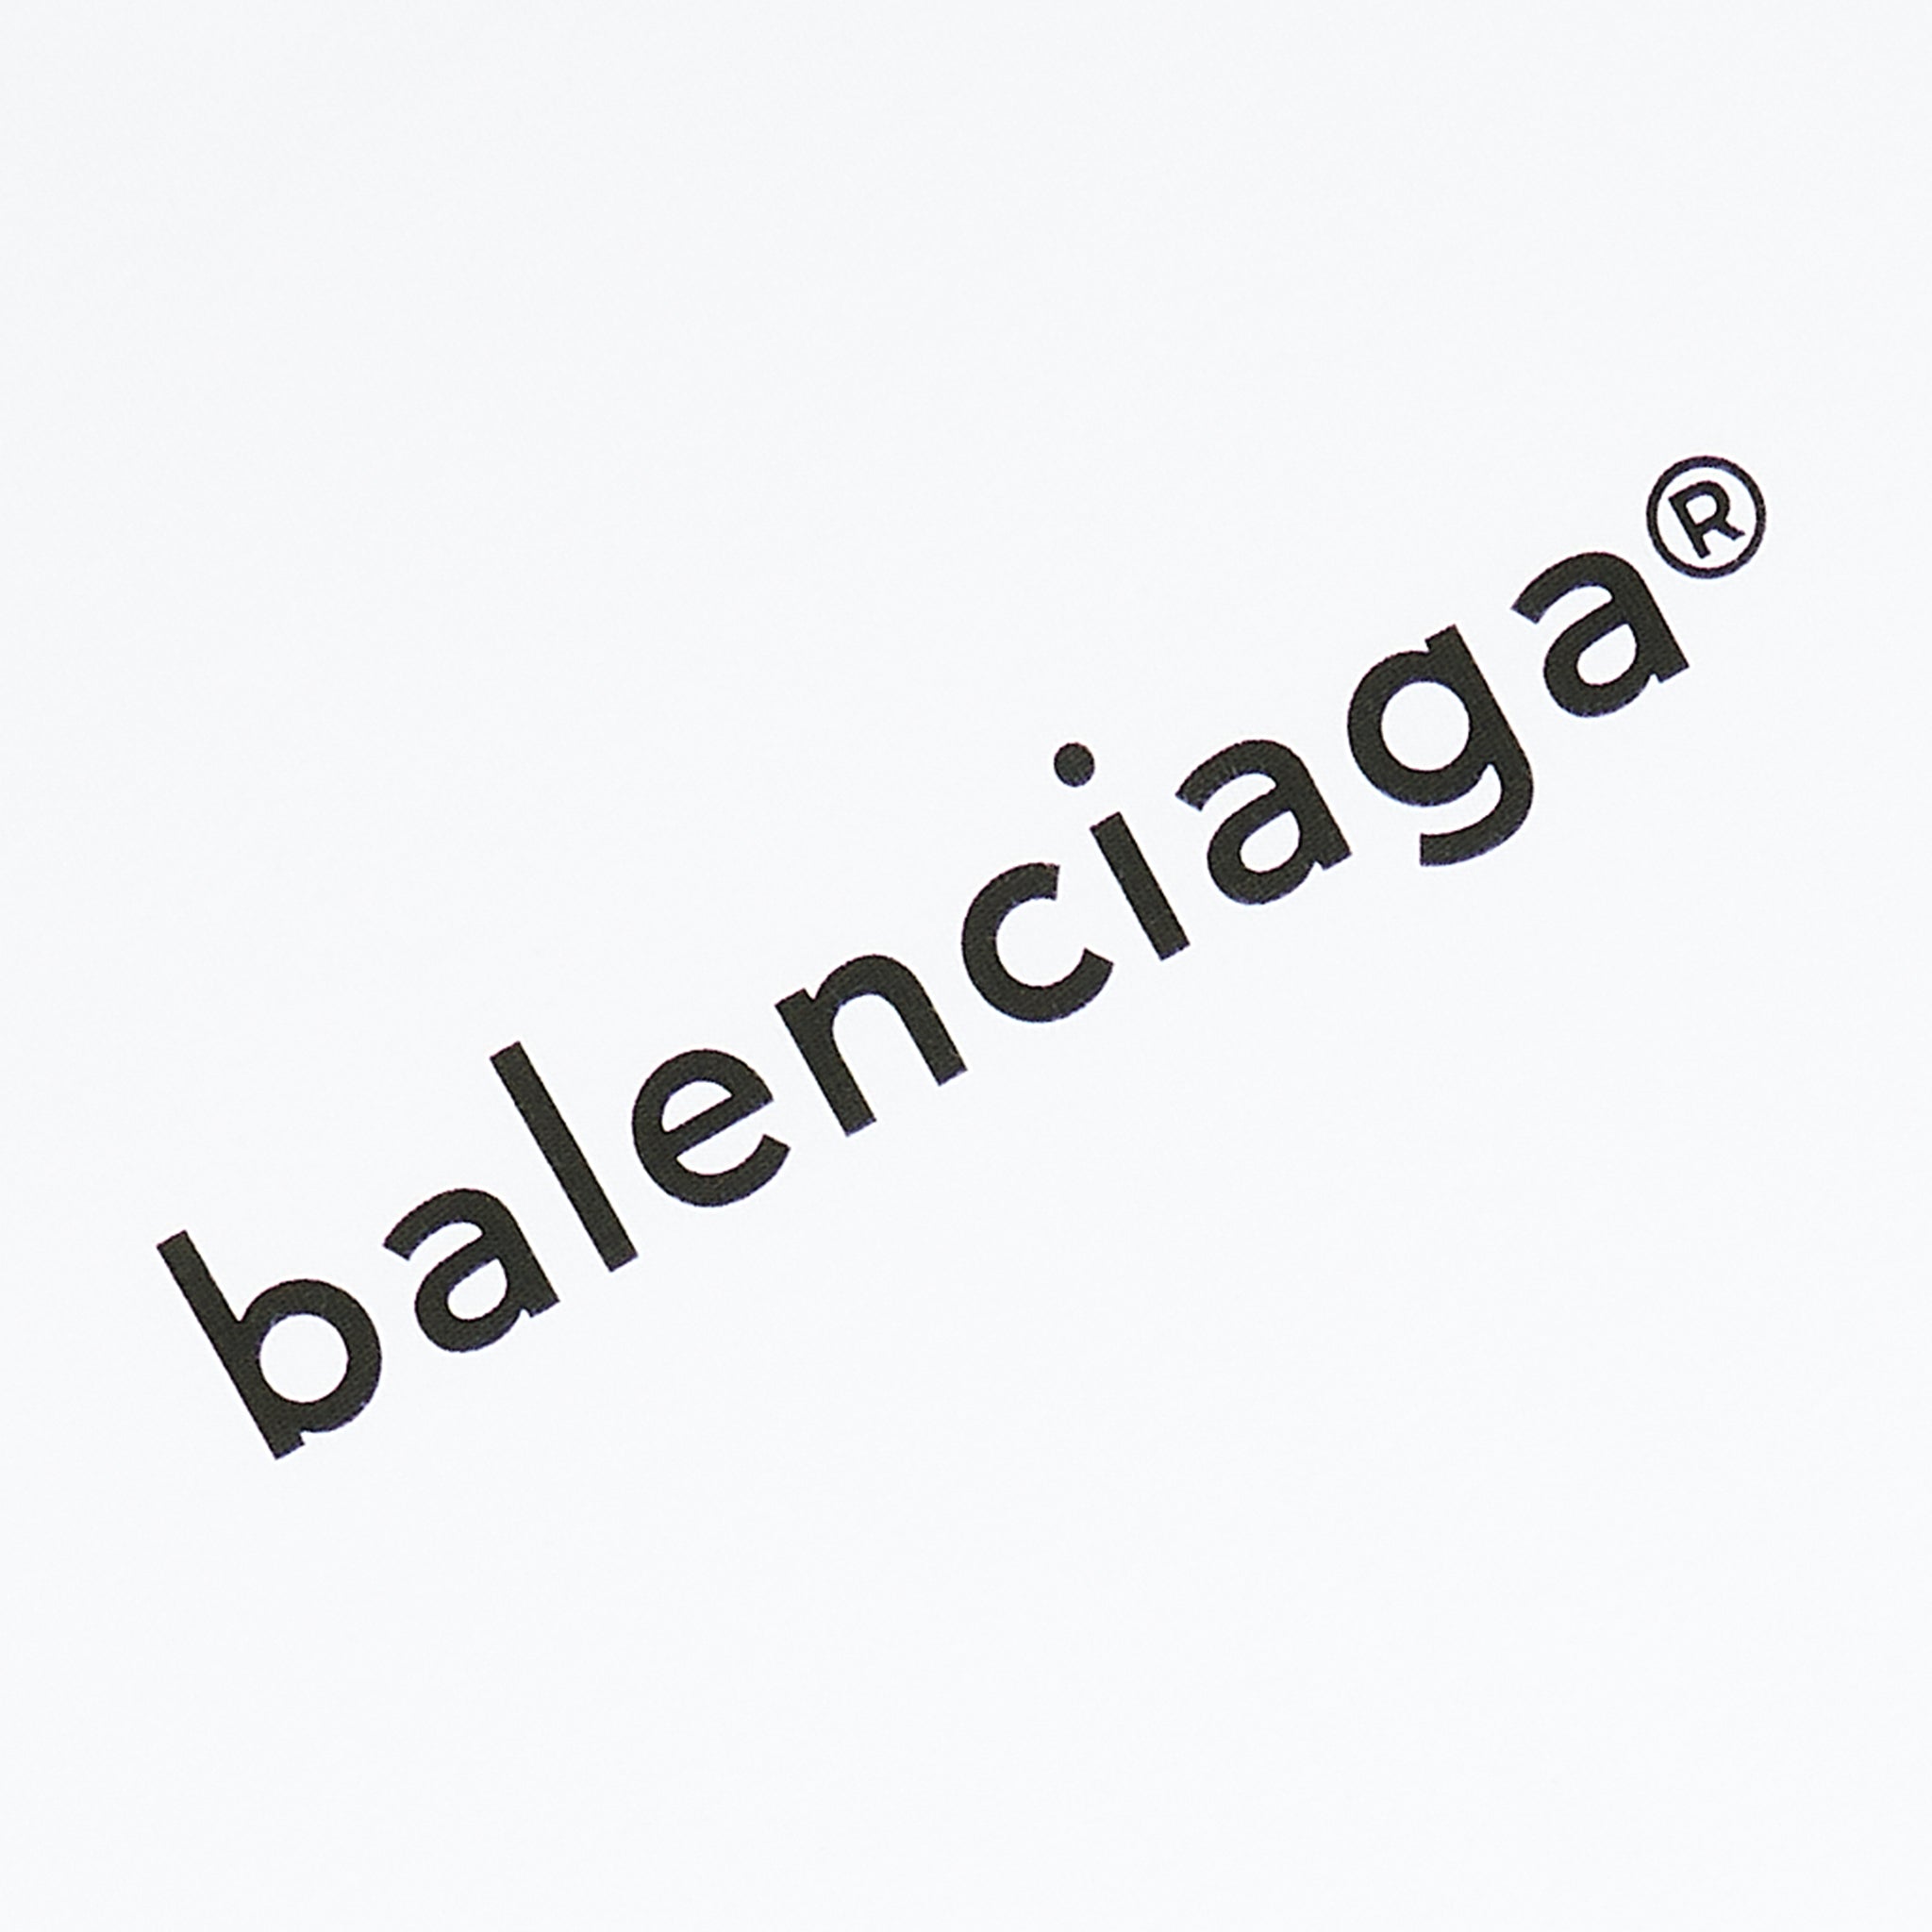 Balenciaga Logo And Symbol, Meaning, History, PNG | vlr.eng.br